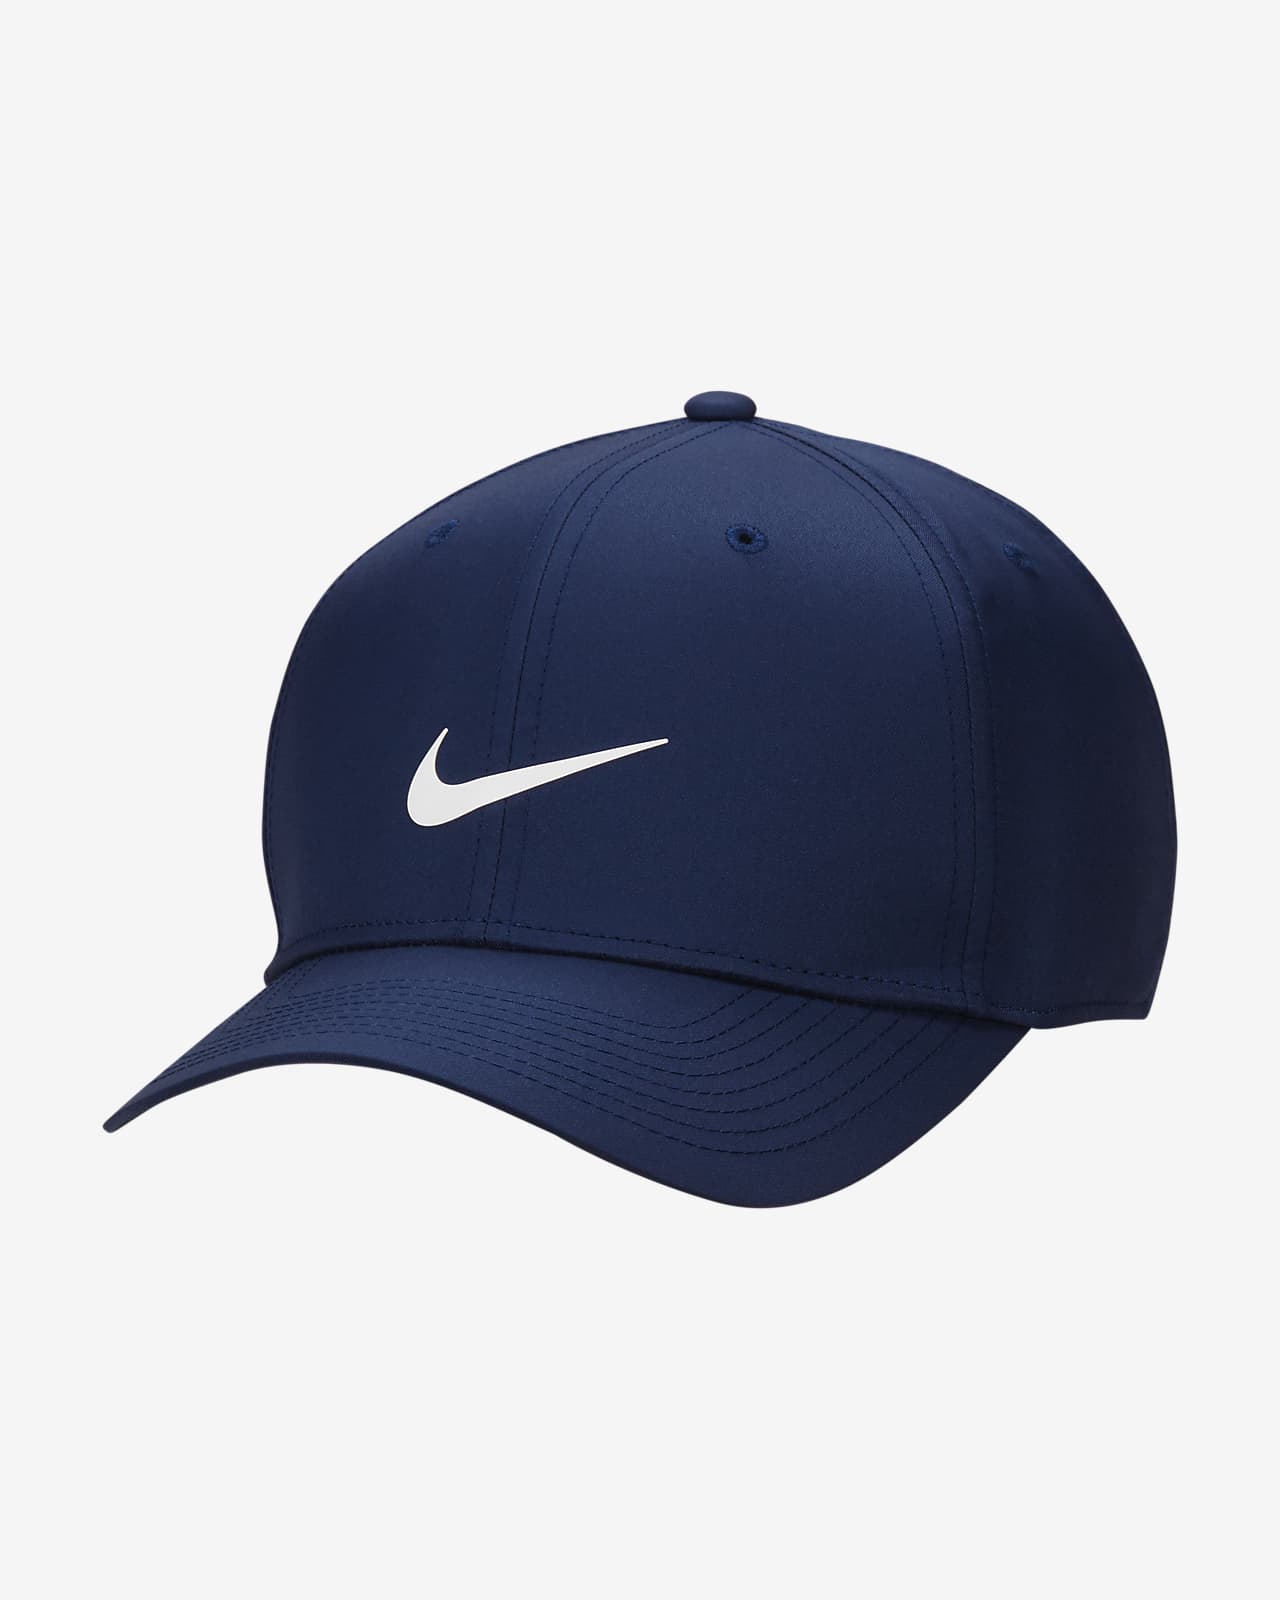 Σταθερό καπέλο jockey με σούστα πίσω Nike Dri-FIT Rise